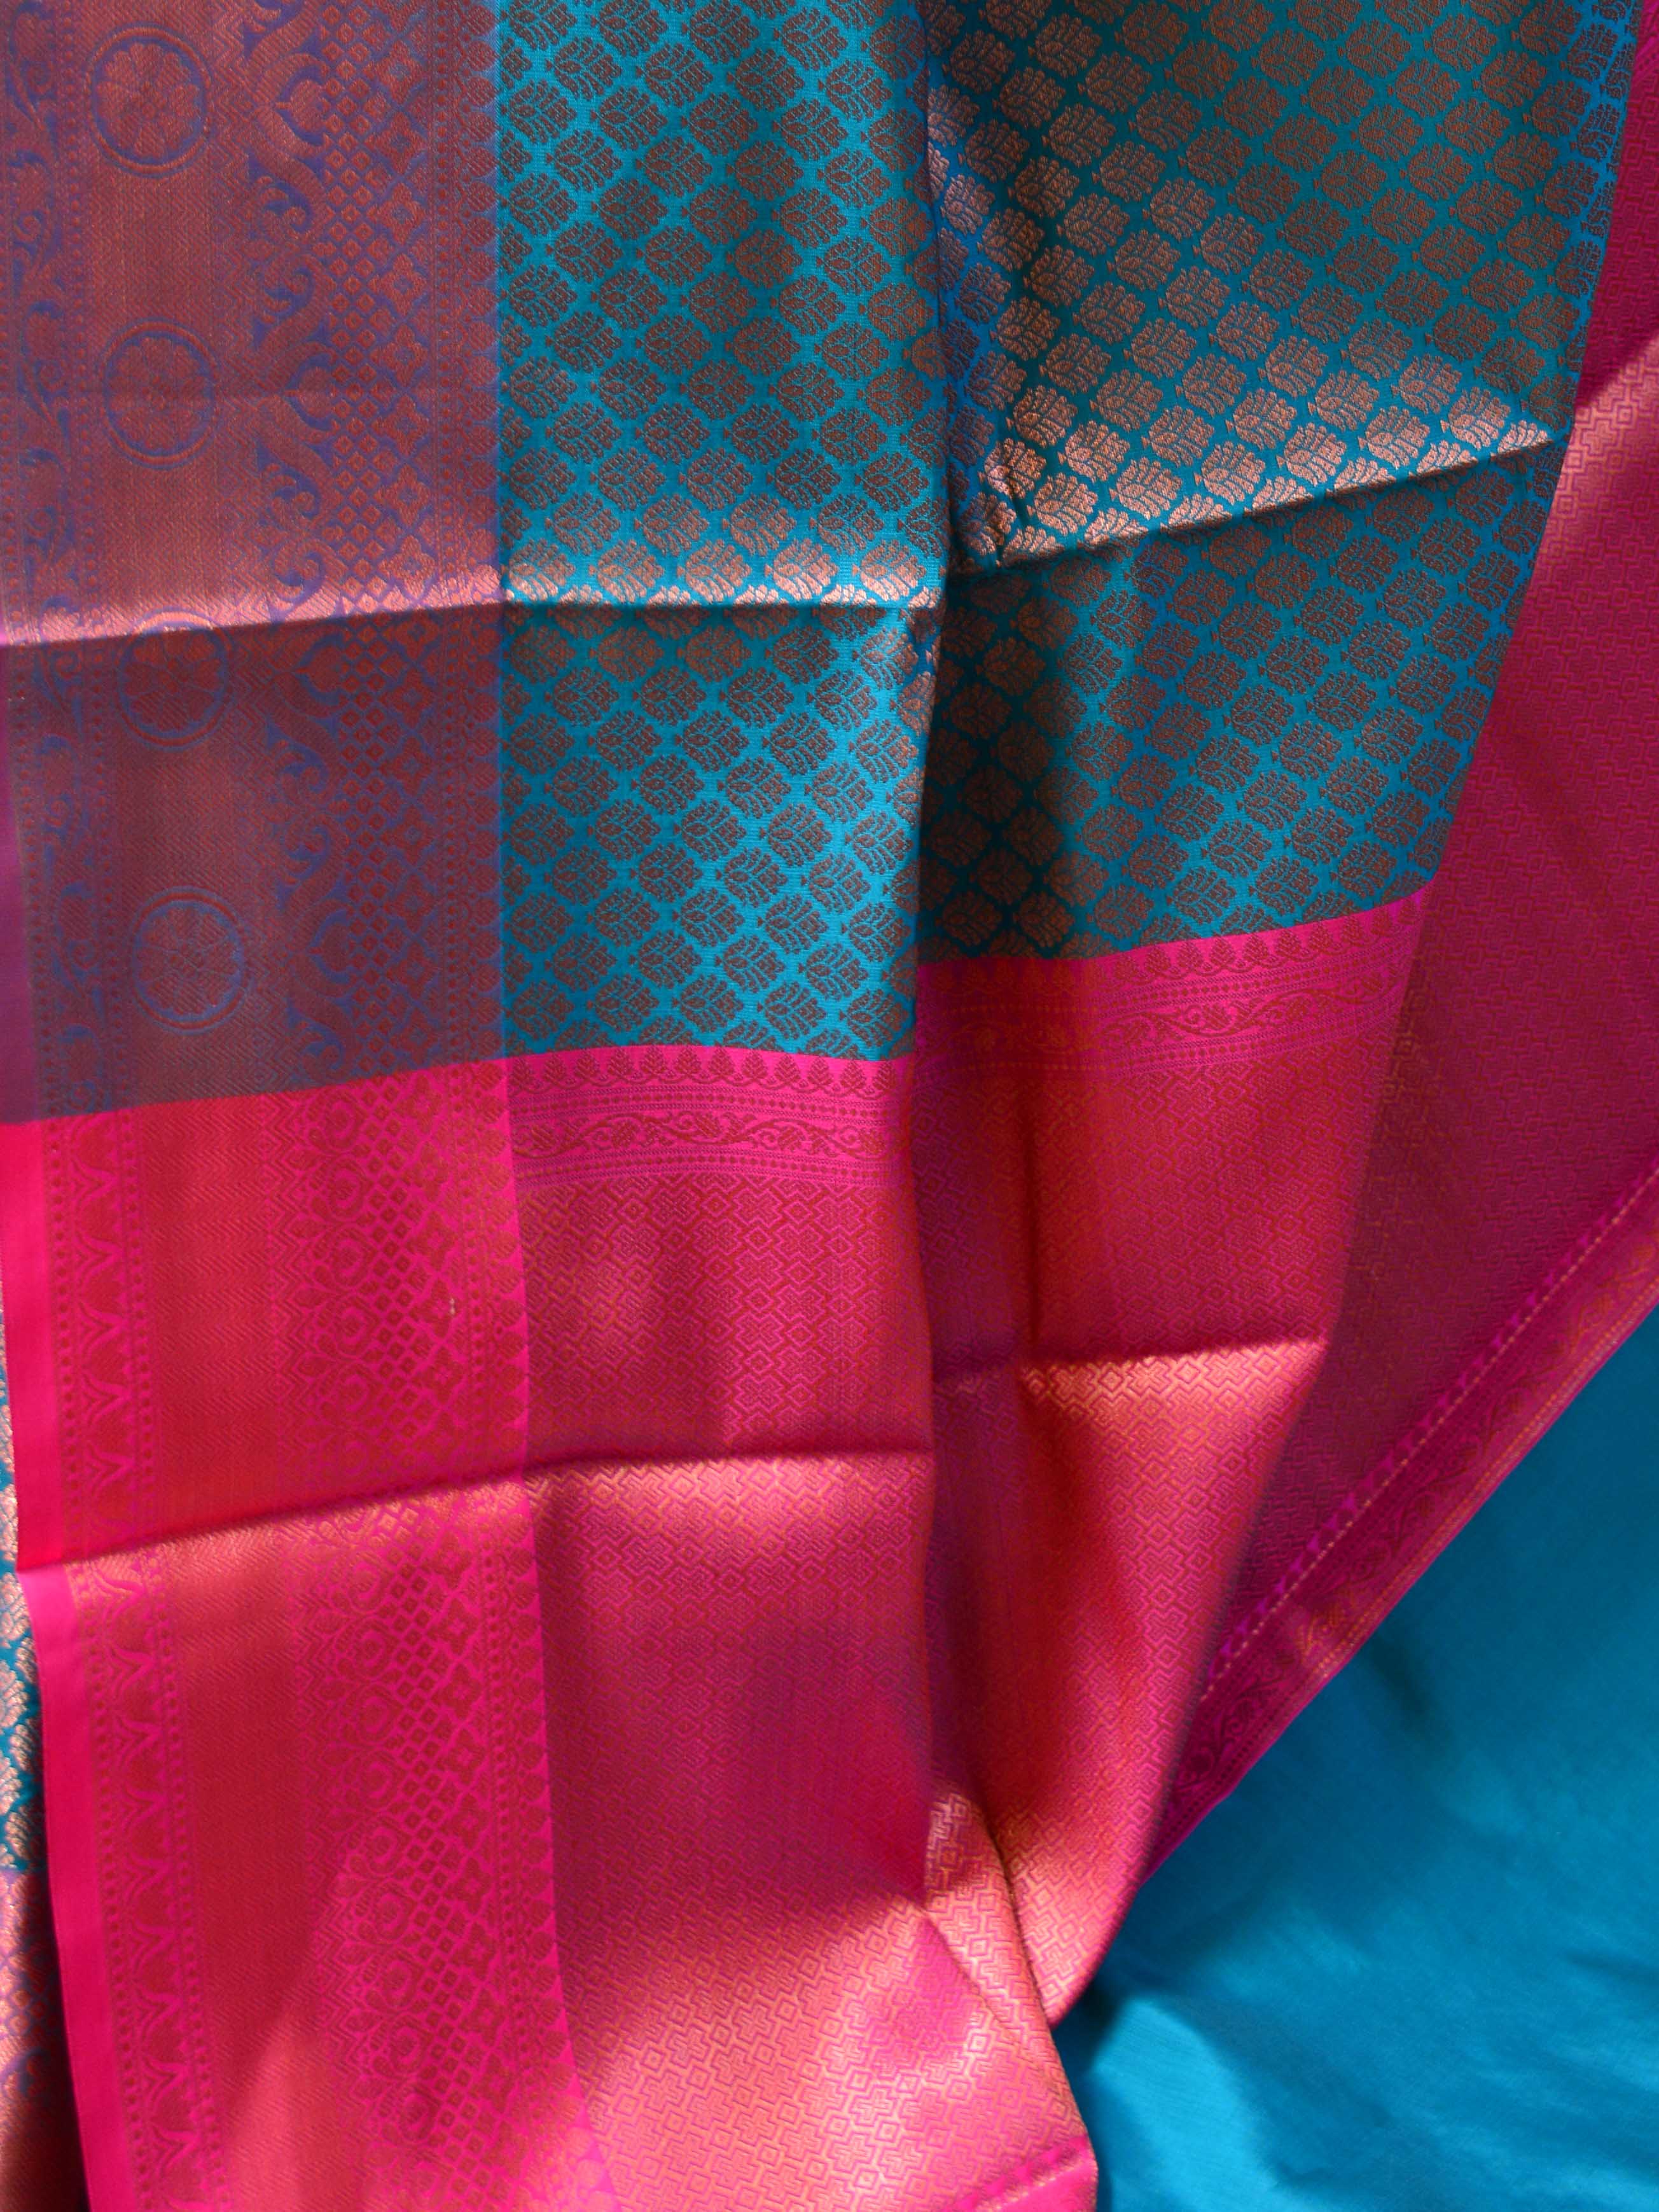 Banarasee Handwoven Semi Silk Saree With Tanchoi & Zari Border Design-Rama Green